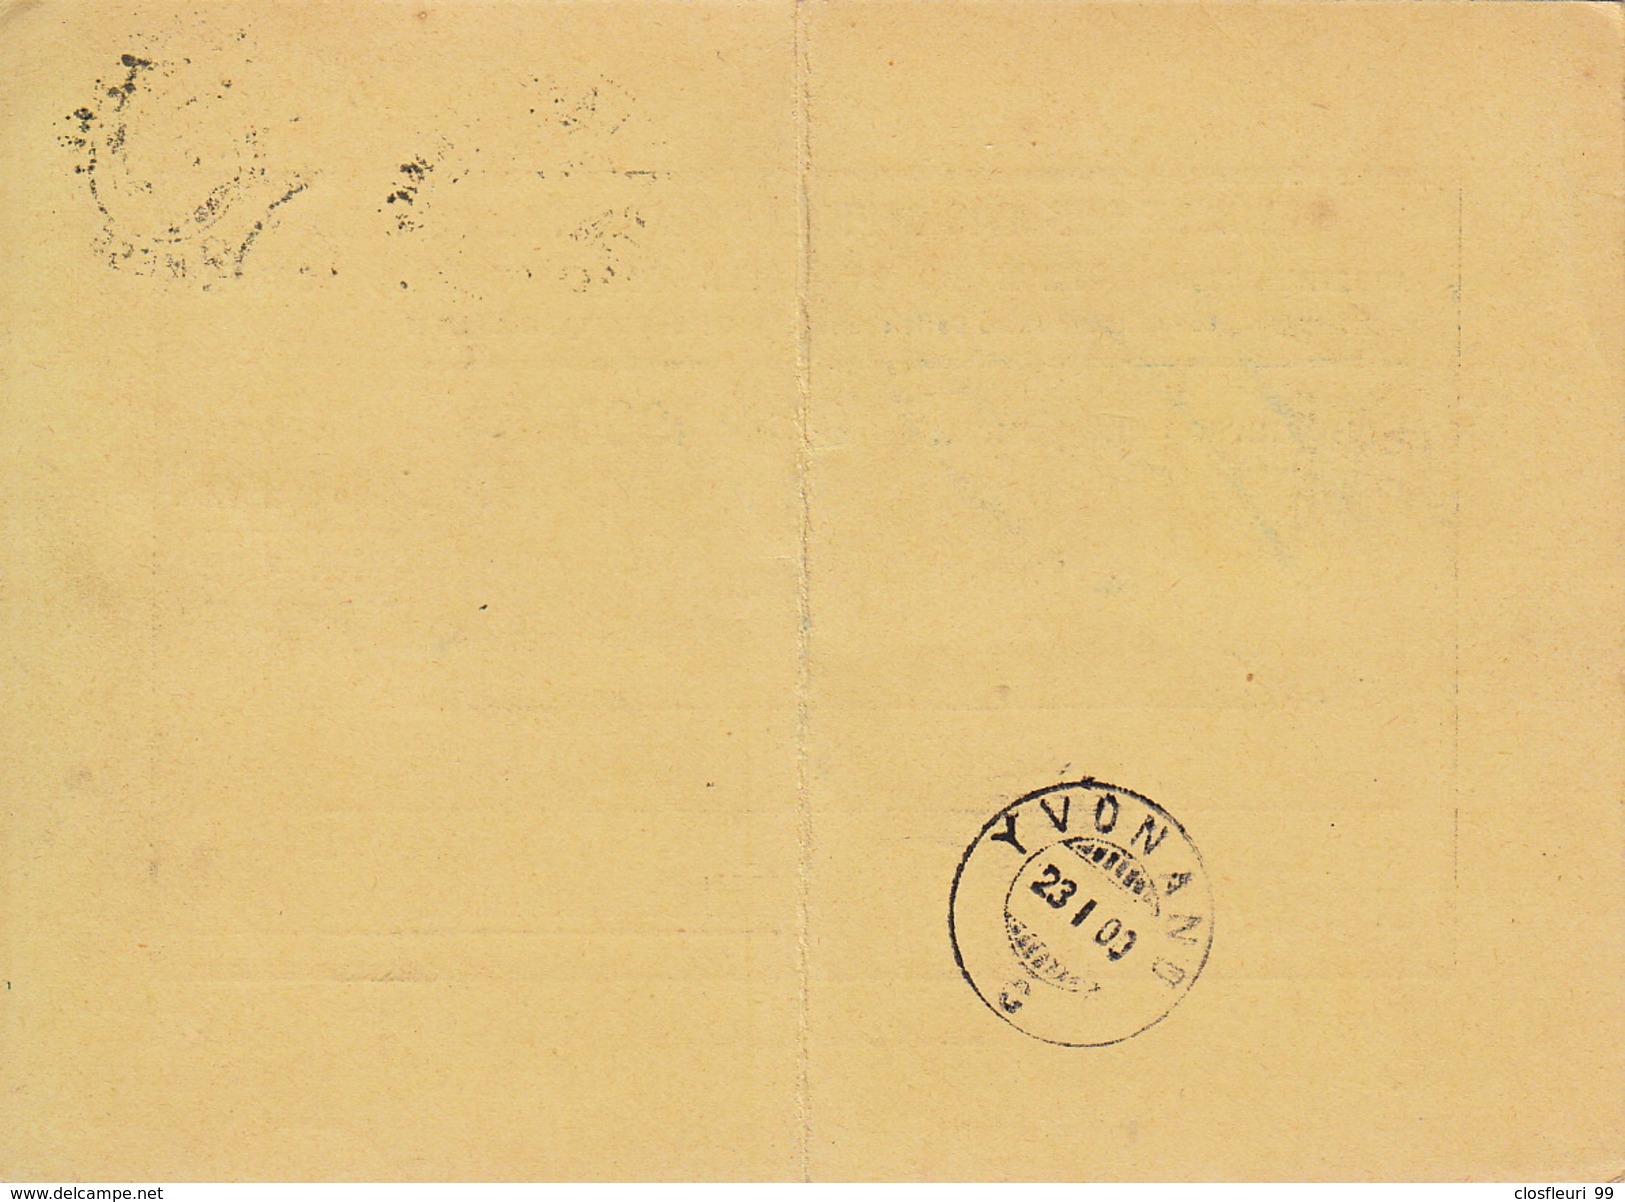 Remboursement  Pour 1900: Feuille Avis Officiels Du Canton De VD / 23.1.1900. Cachet Arrivée Yvonand - Brieven En Documenten